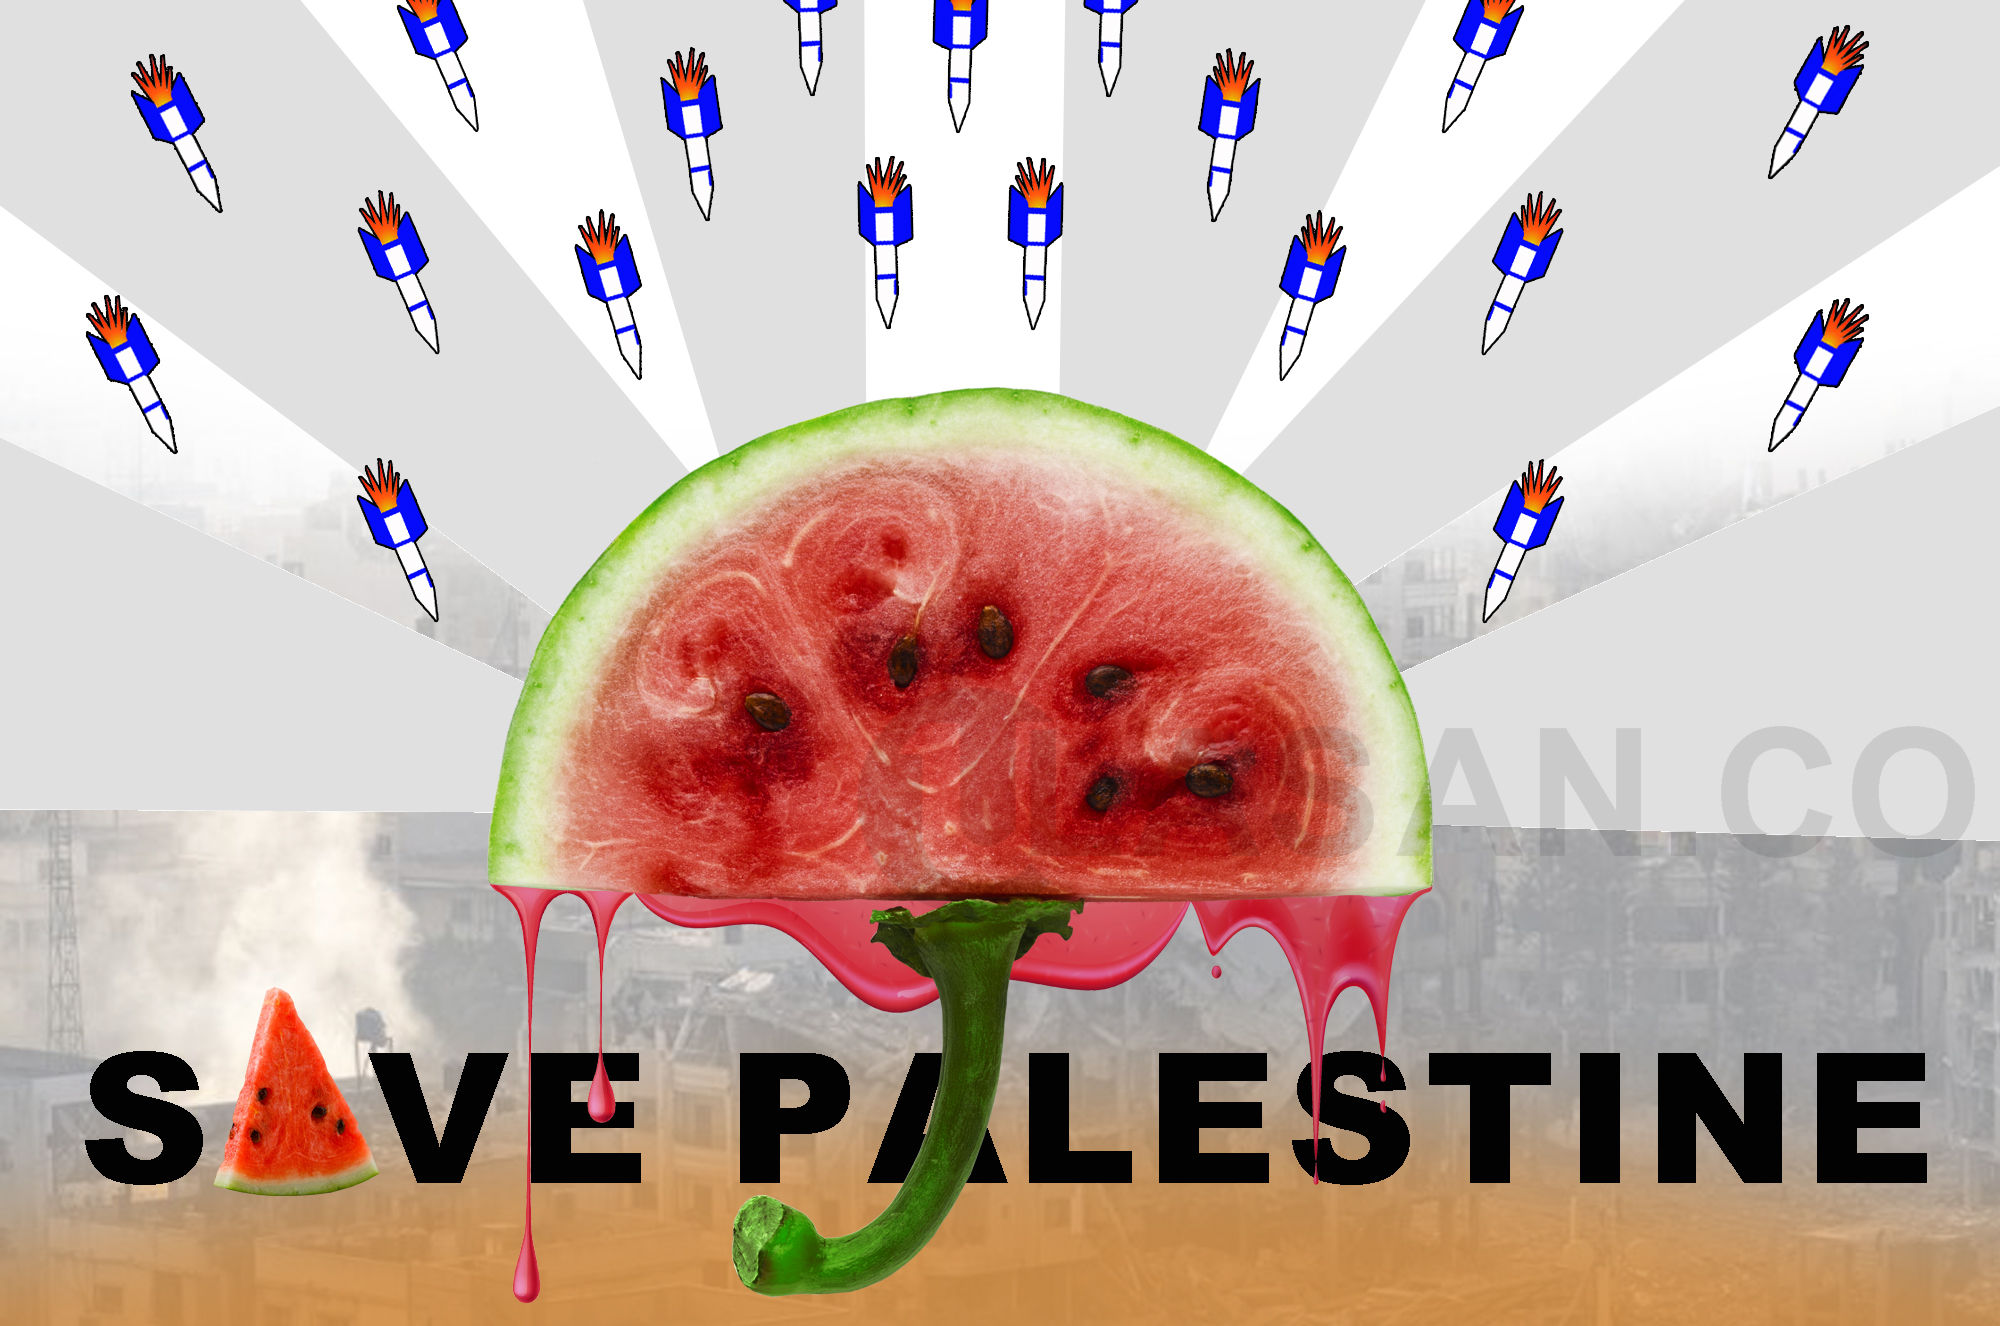 Ilustrasi - gambar atau emoji semangka dalam setiap unggahan di media sosial sebagai tanda dukungan terhadap Palestina.